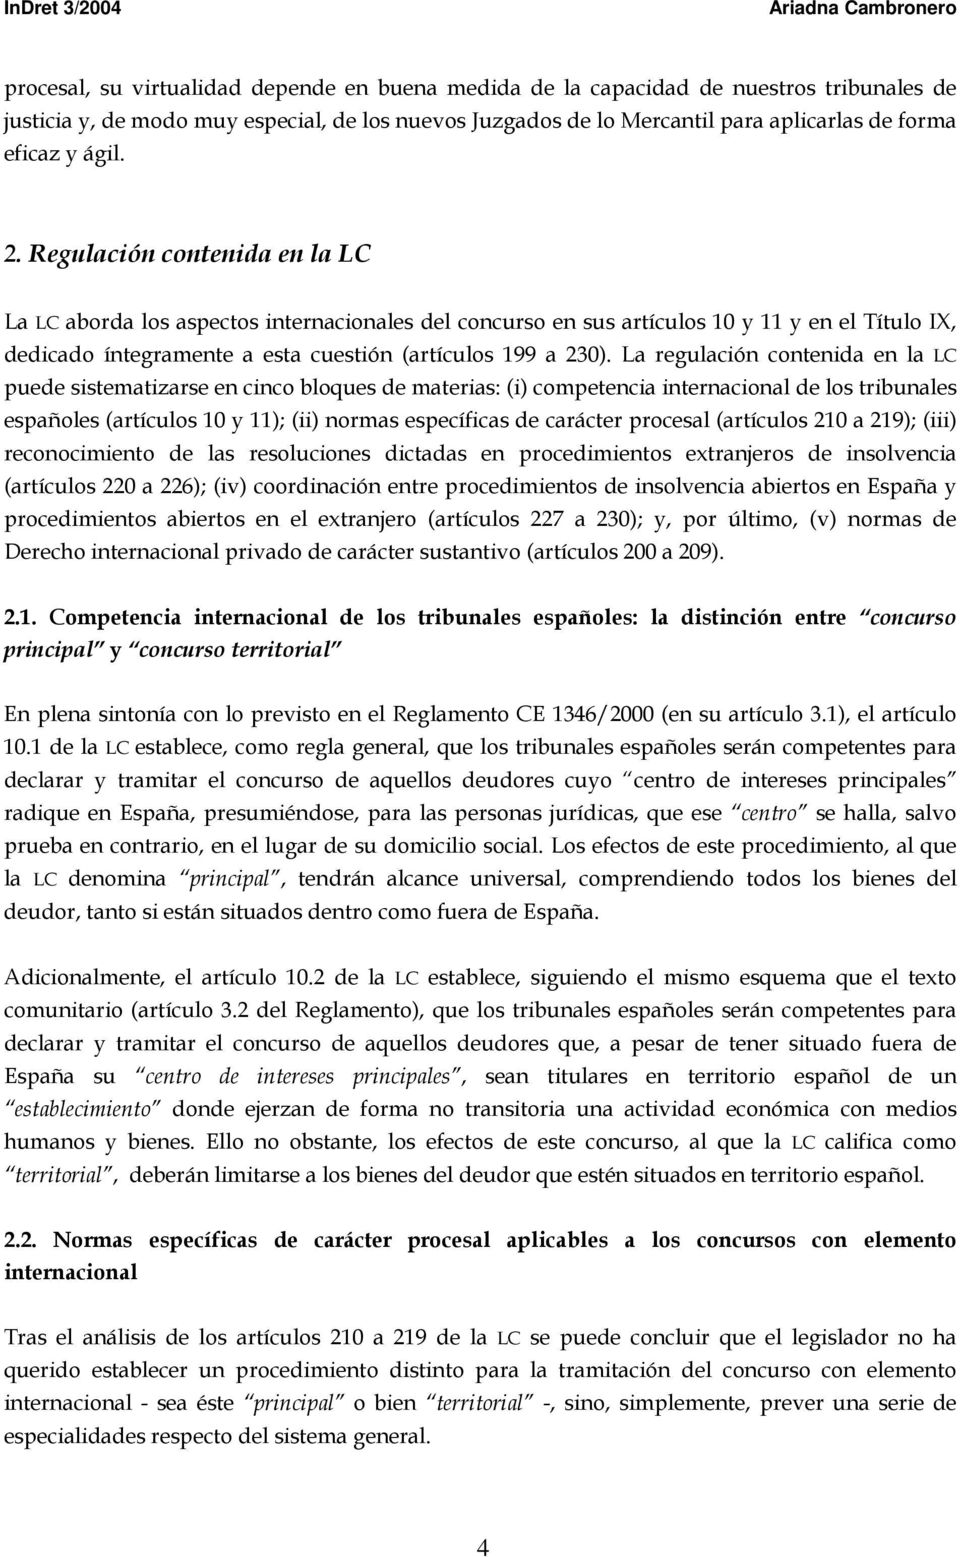 La regulación contenida en la LC puede sistematizarse en cinco bloques de materias: (i) competencia internacional de los tribunales españoles (artículos 10 y 11); (ii) normas específicas de carácter